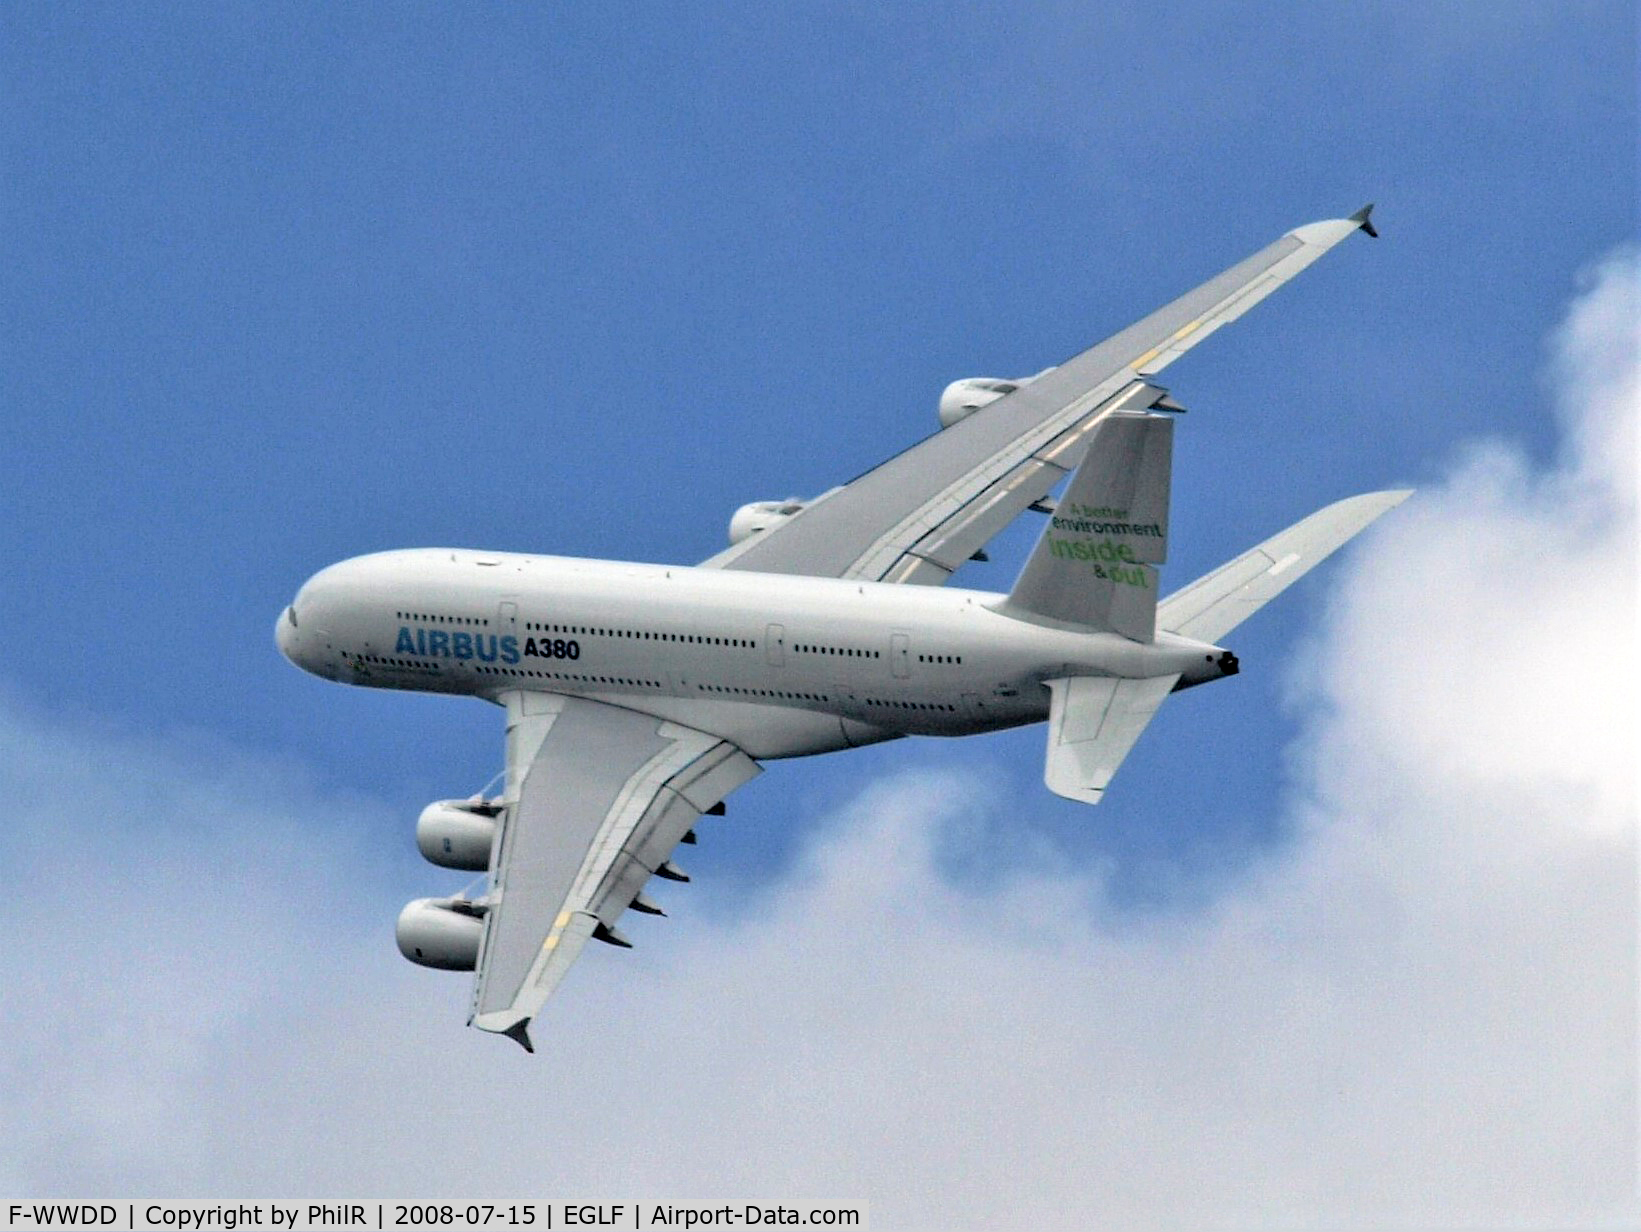 F-WWDD, 2005 Airbus A380-861 C/N 004, 2005 Airbus A380-800 F-WWDD FIA